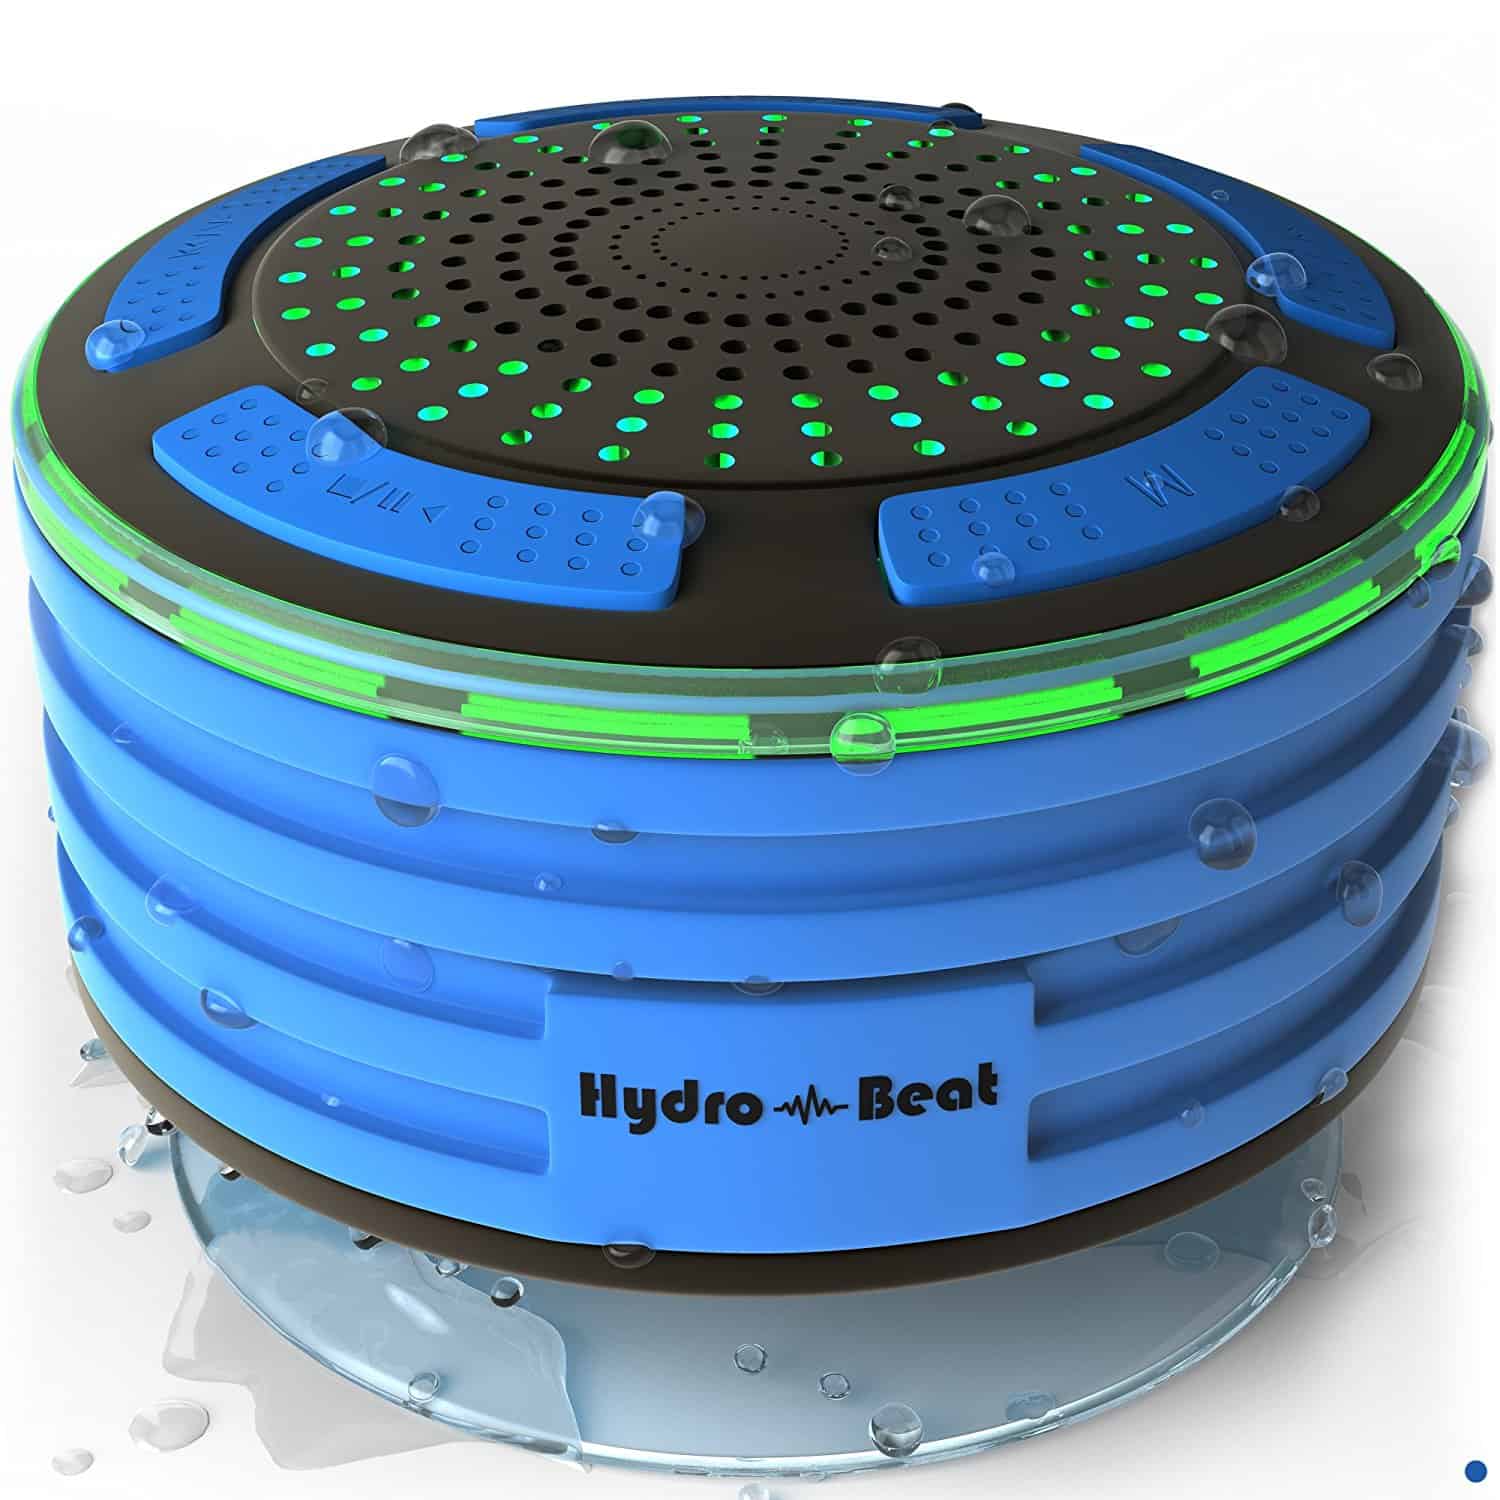 Hydro-Beat Illumination Waterproof Bluetooth Radio Speaker